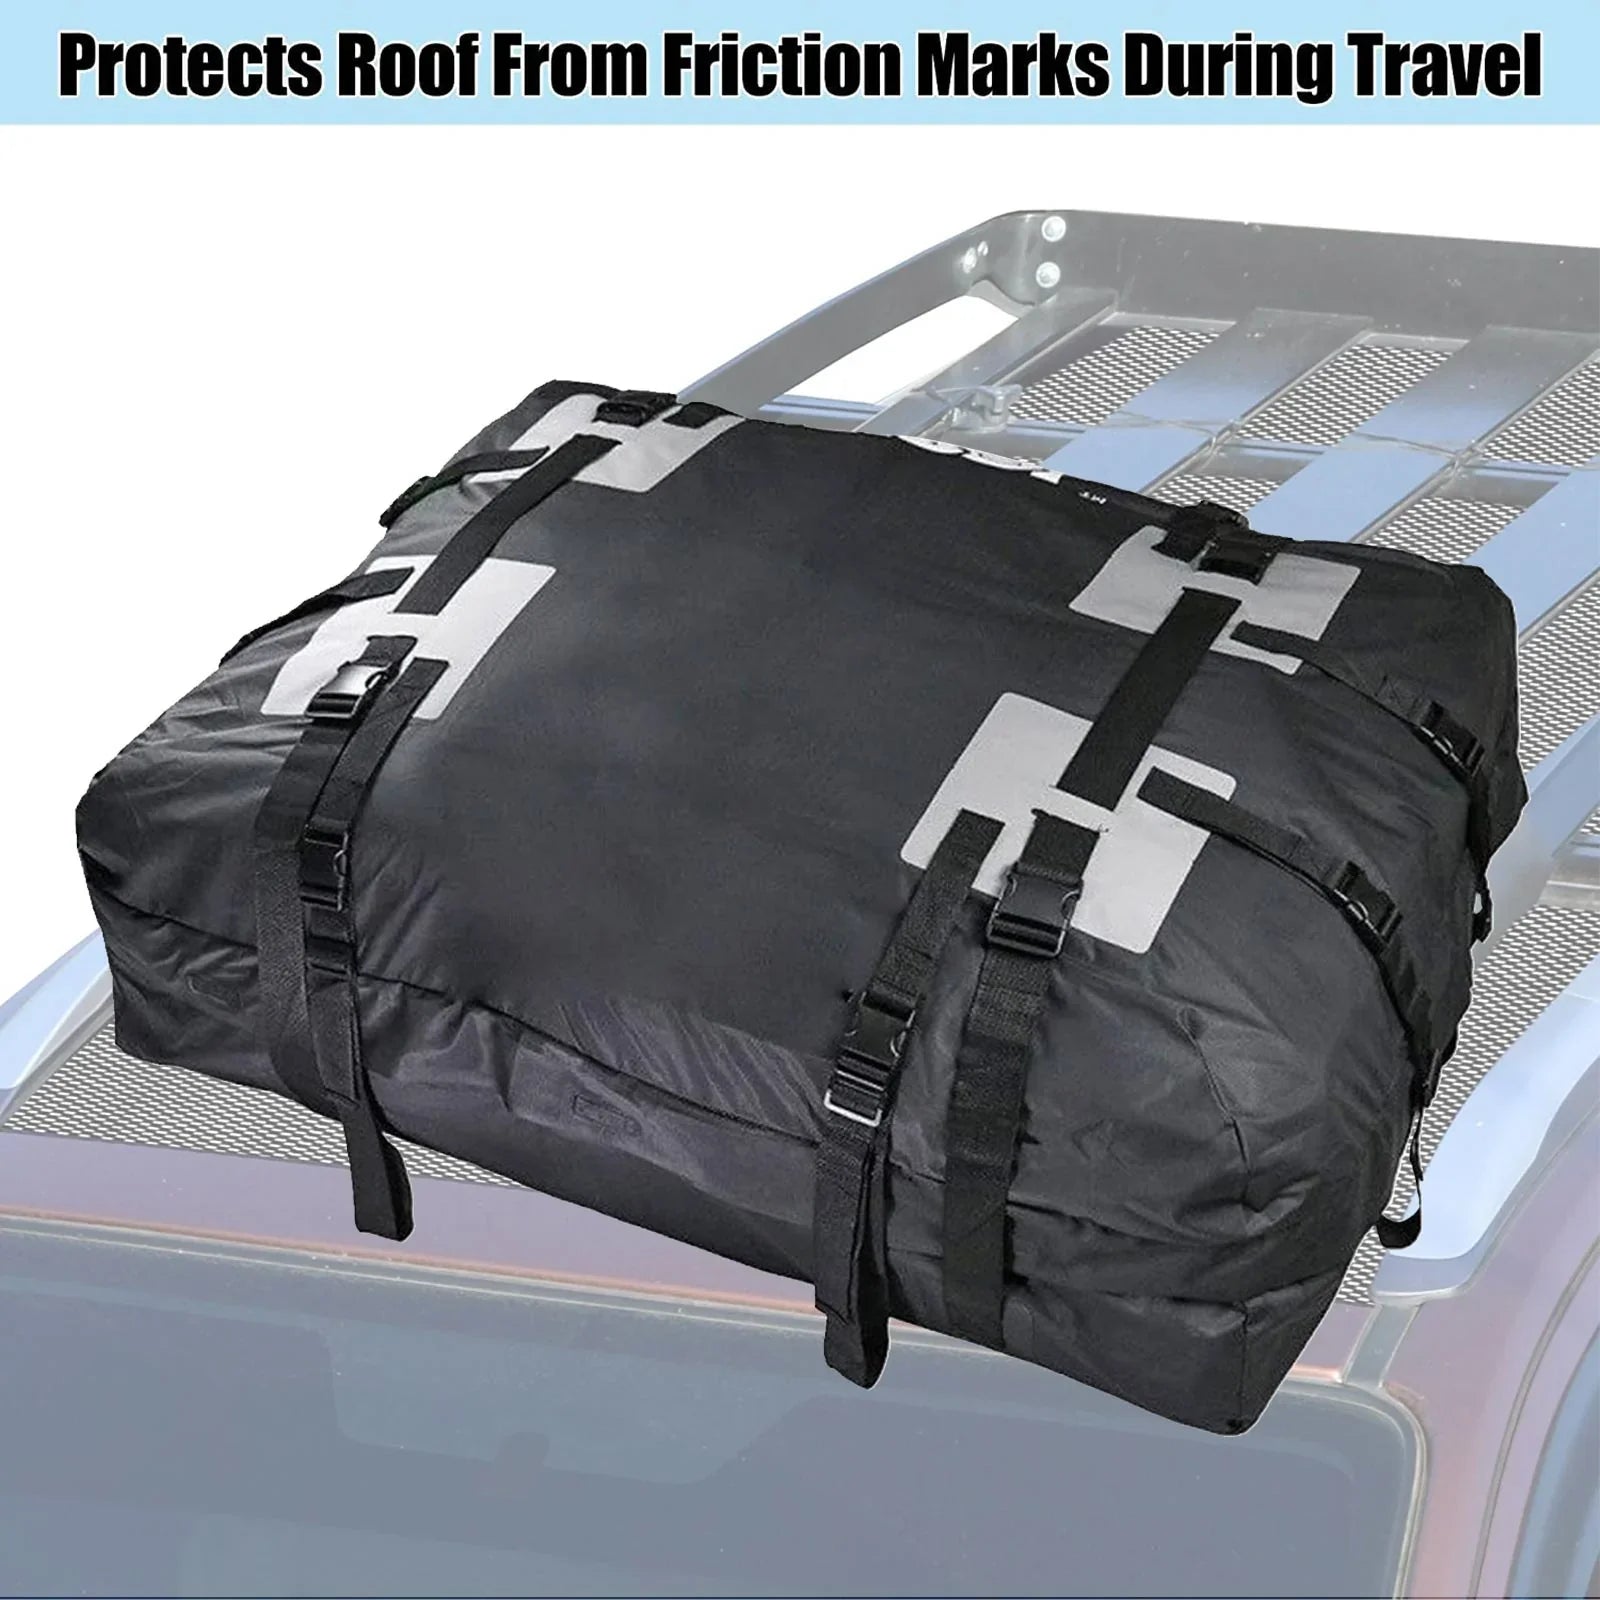 Borsa impermeabile per portapacchi auto, borsa portapacchi, borsa cubo con tappetino antiscivolo